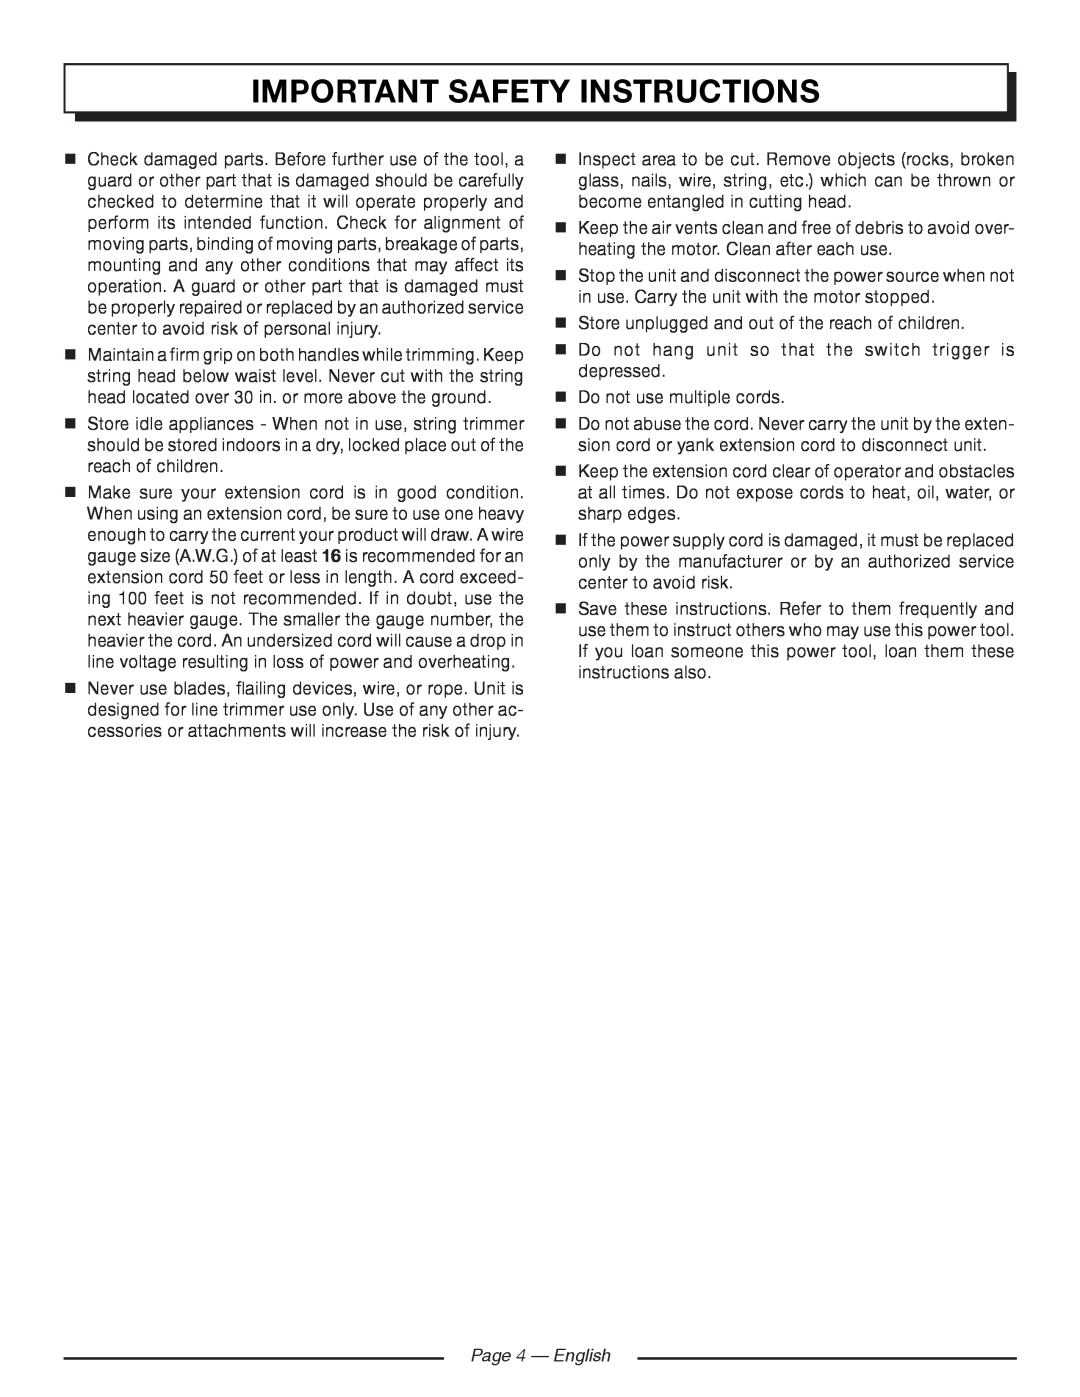 Homelite UT41120 manuel dutilisation Page 4 - English, Important Safety Instructions 